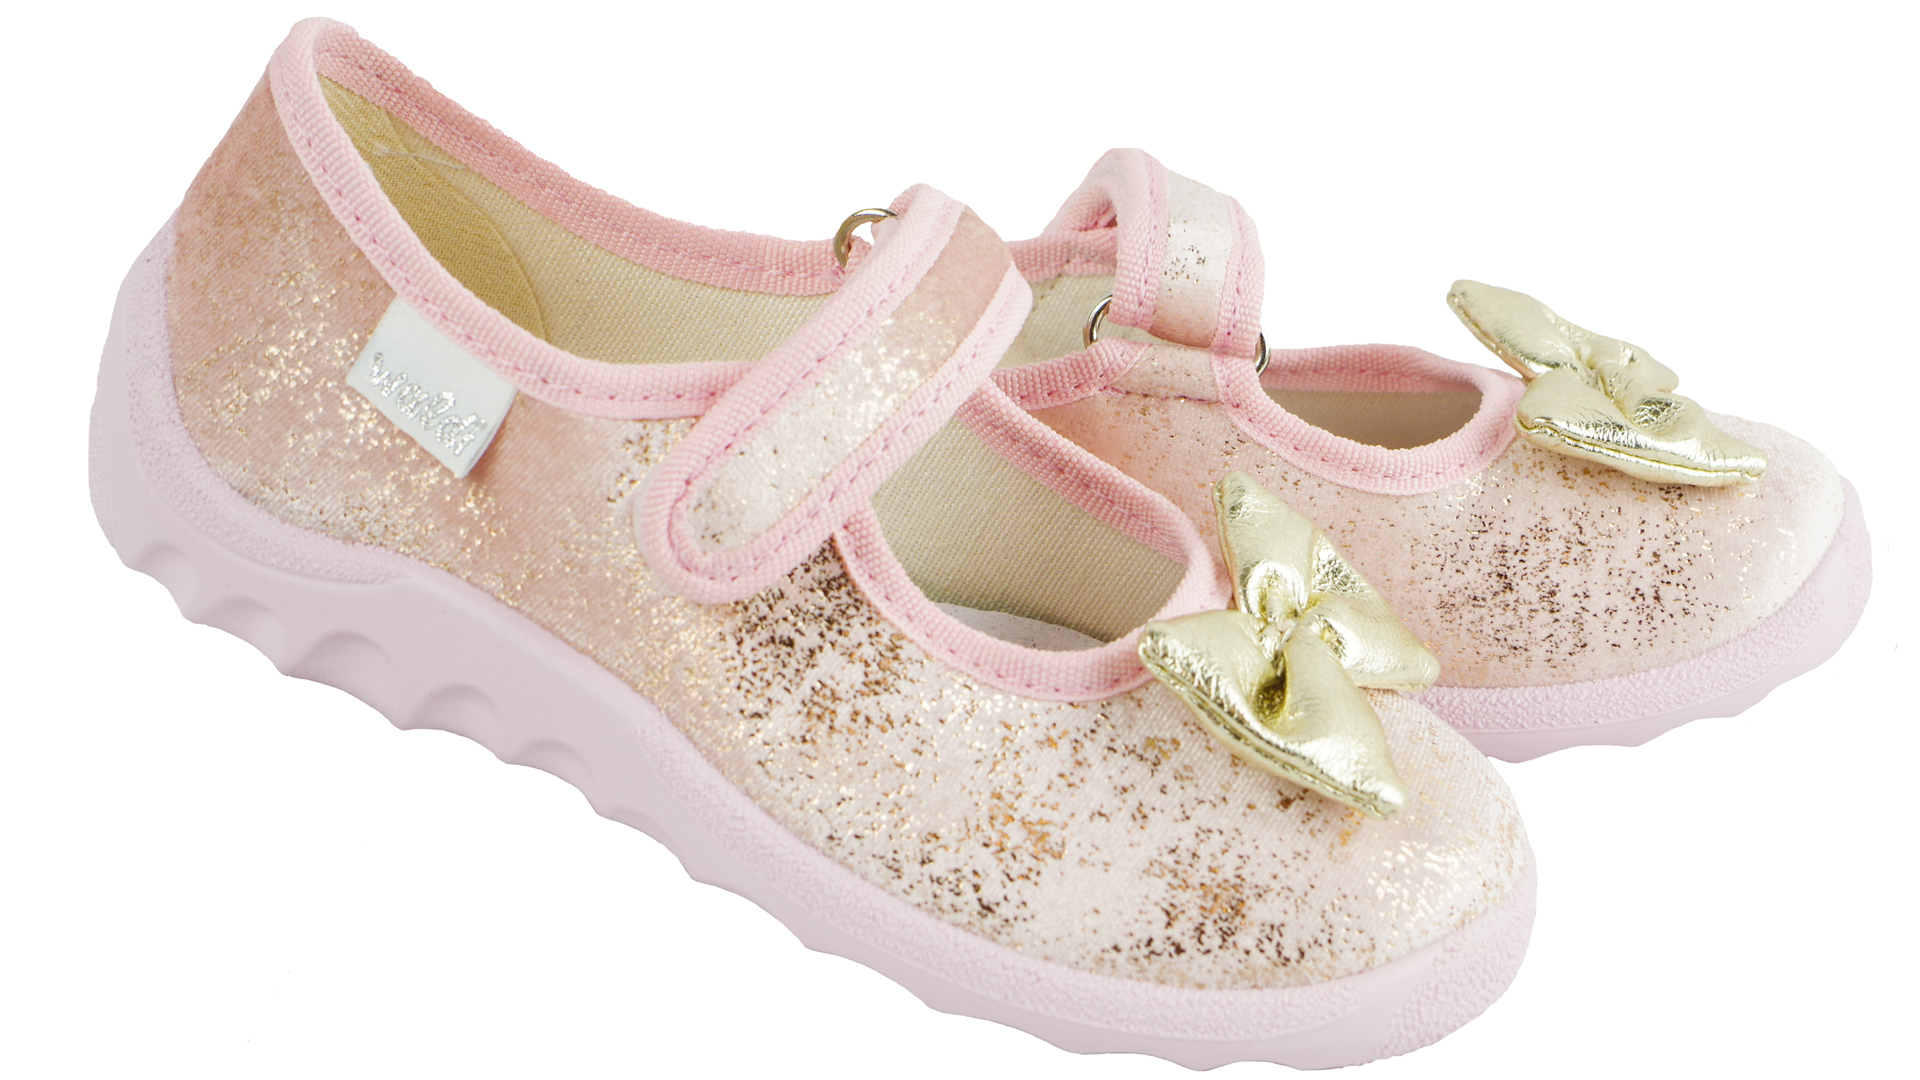 Текстильная обувь для девочек Тапочки Катя (1925) цвет Розовый 21-27 размеры – Sole Kids. Фото 2